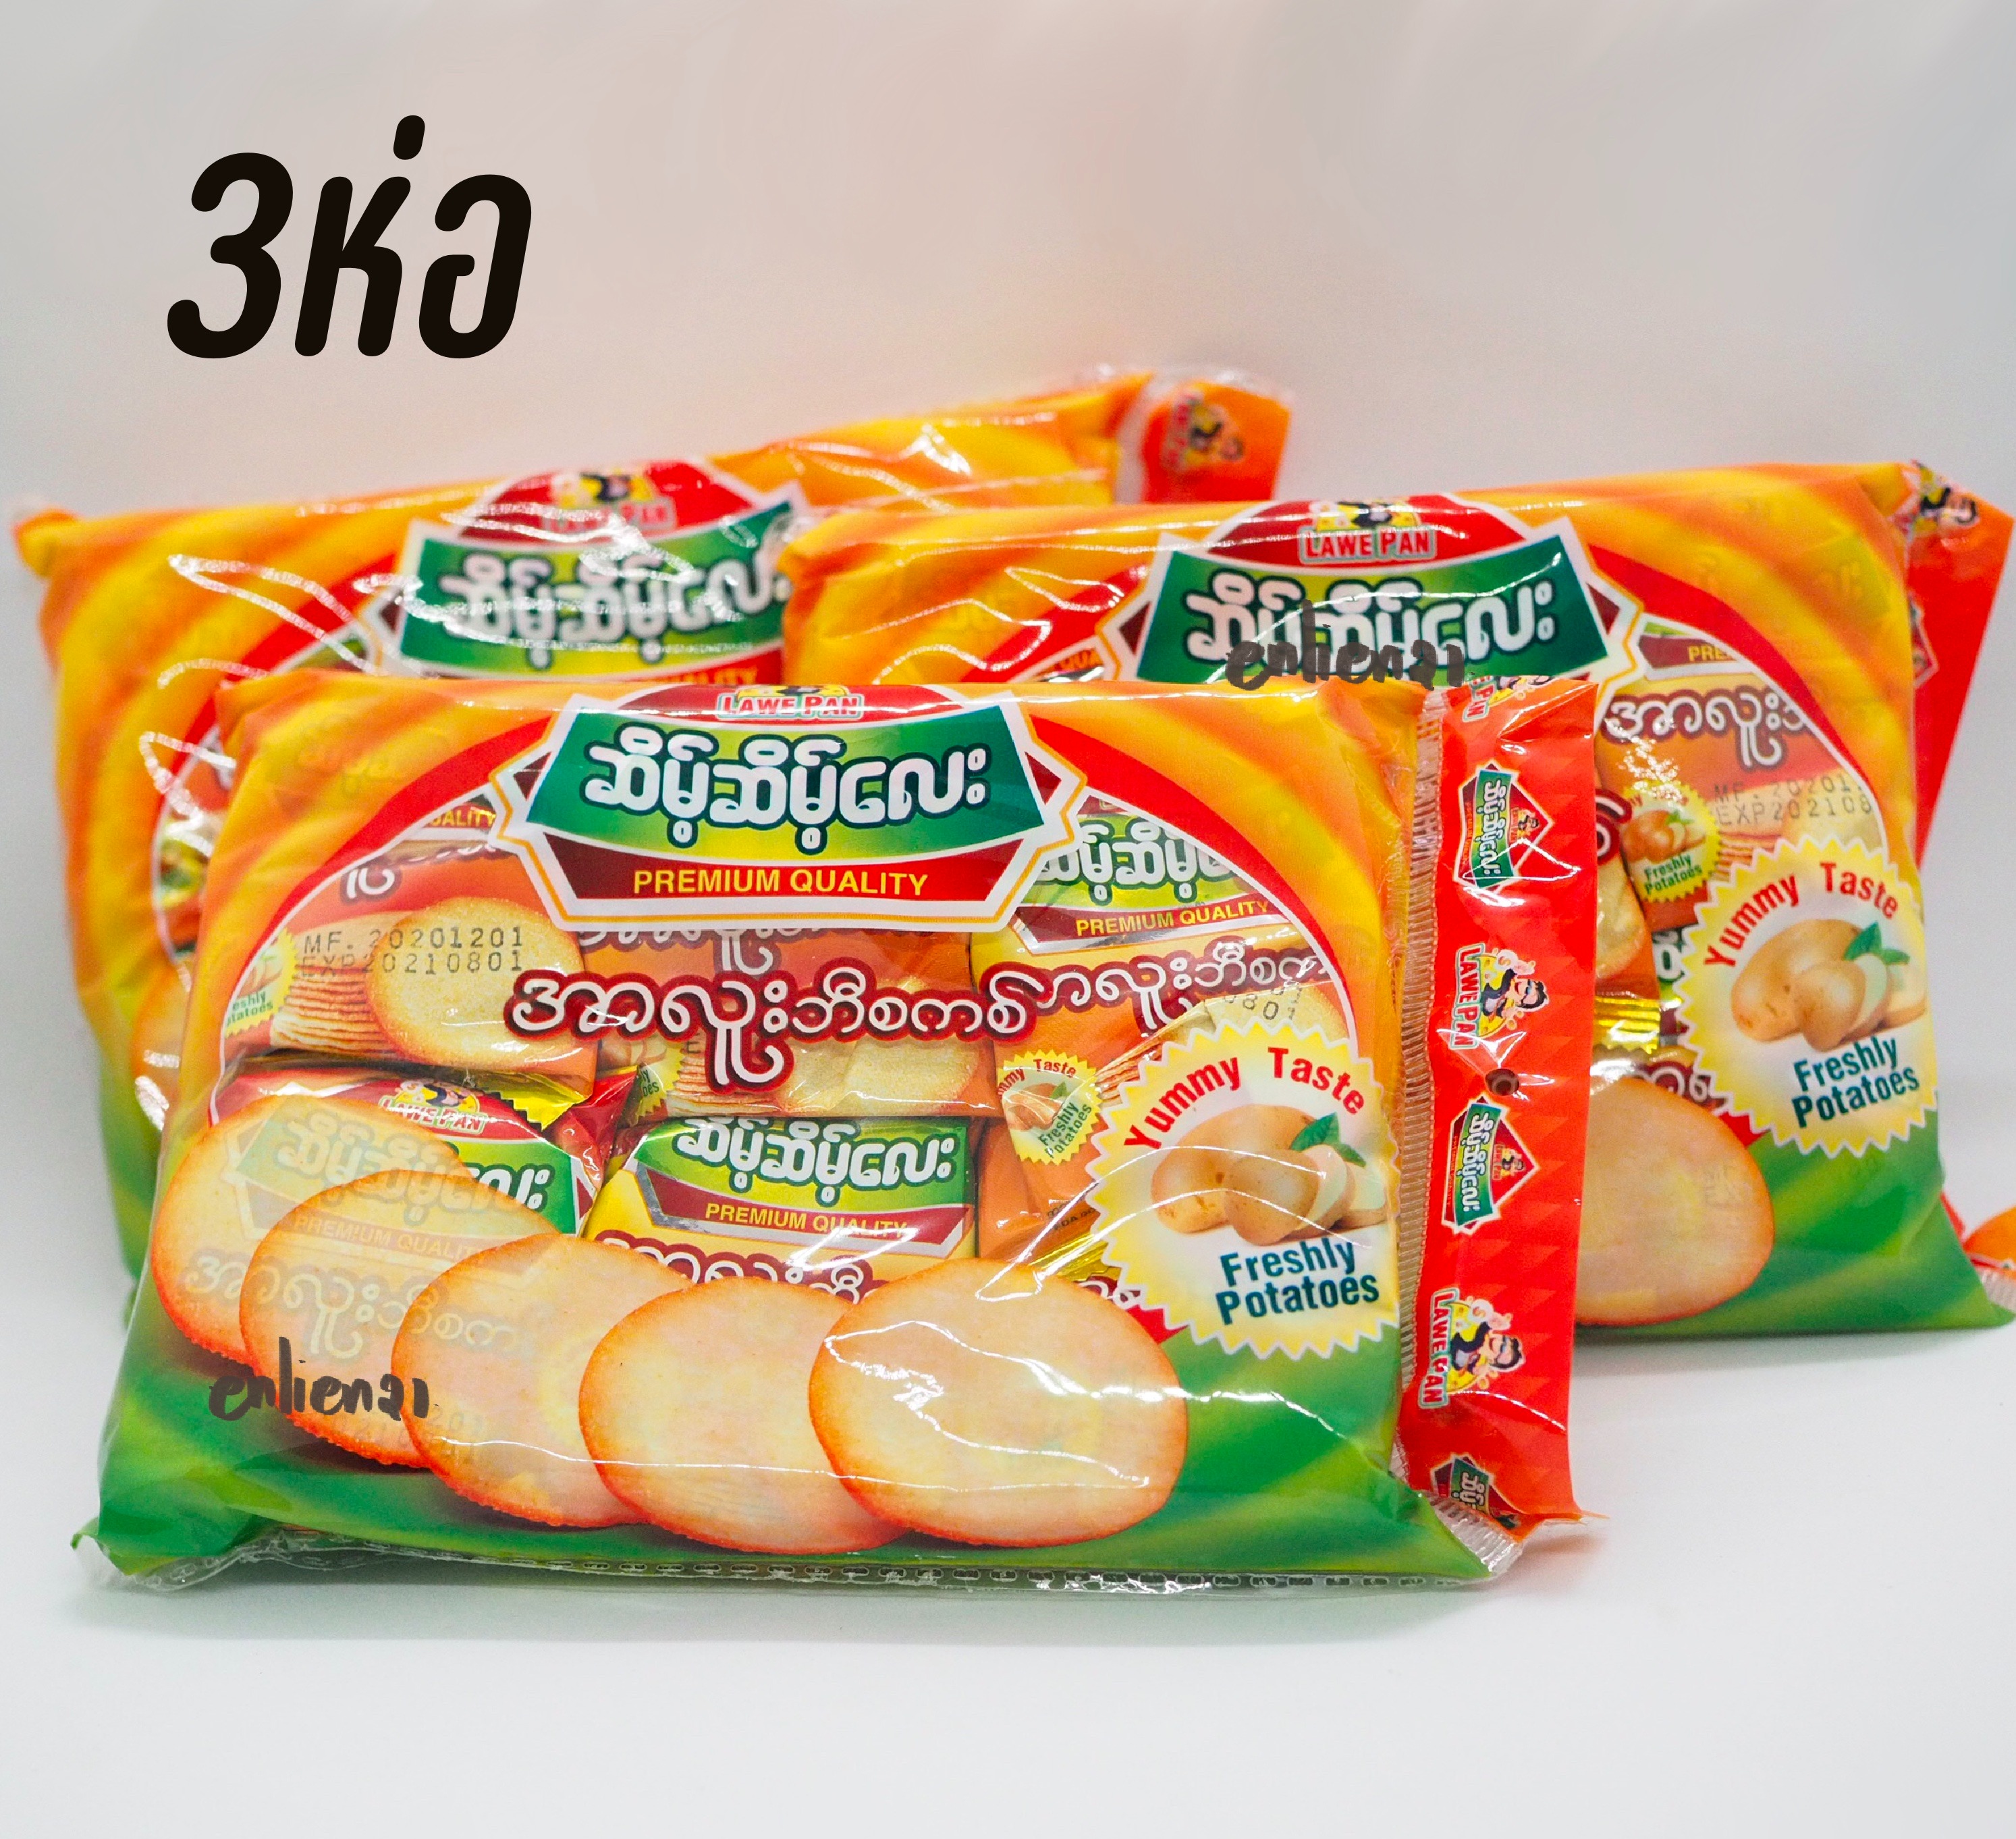 ขนมบิสกิตมันฝรั่ง คุกกี้พม่า ขนมมันฝรั่งพม่า ขนมพม่า ขนมปังพม่า ขนมพม่า (3ห่อ99)